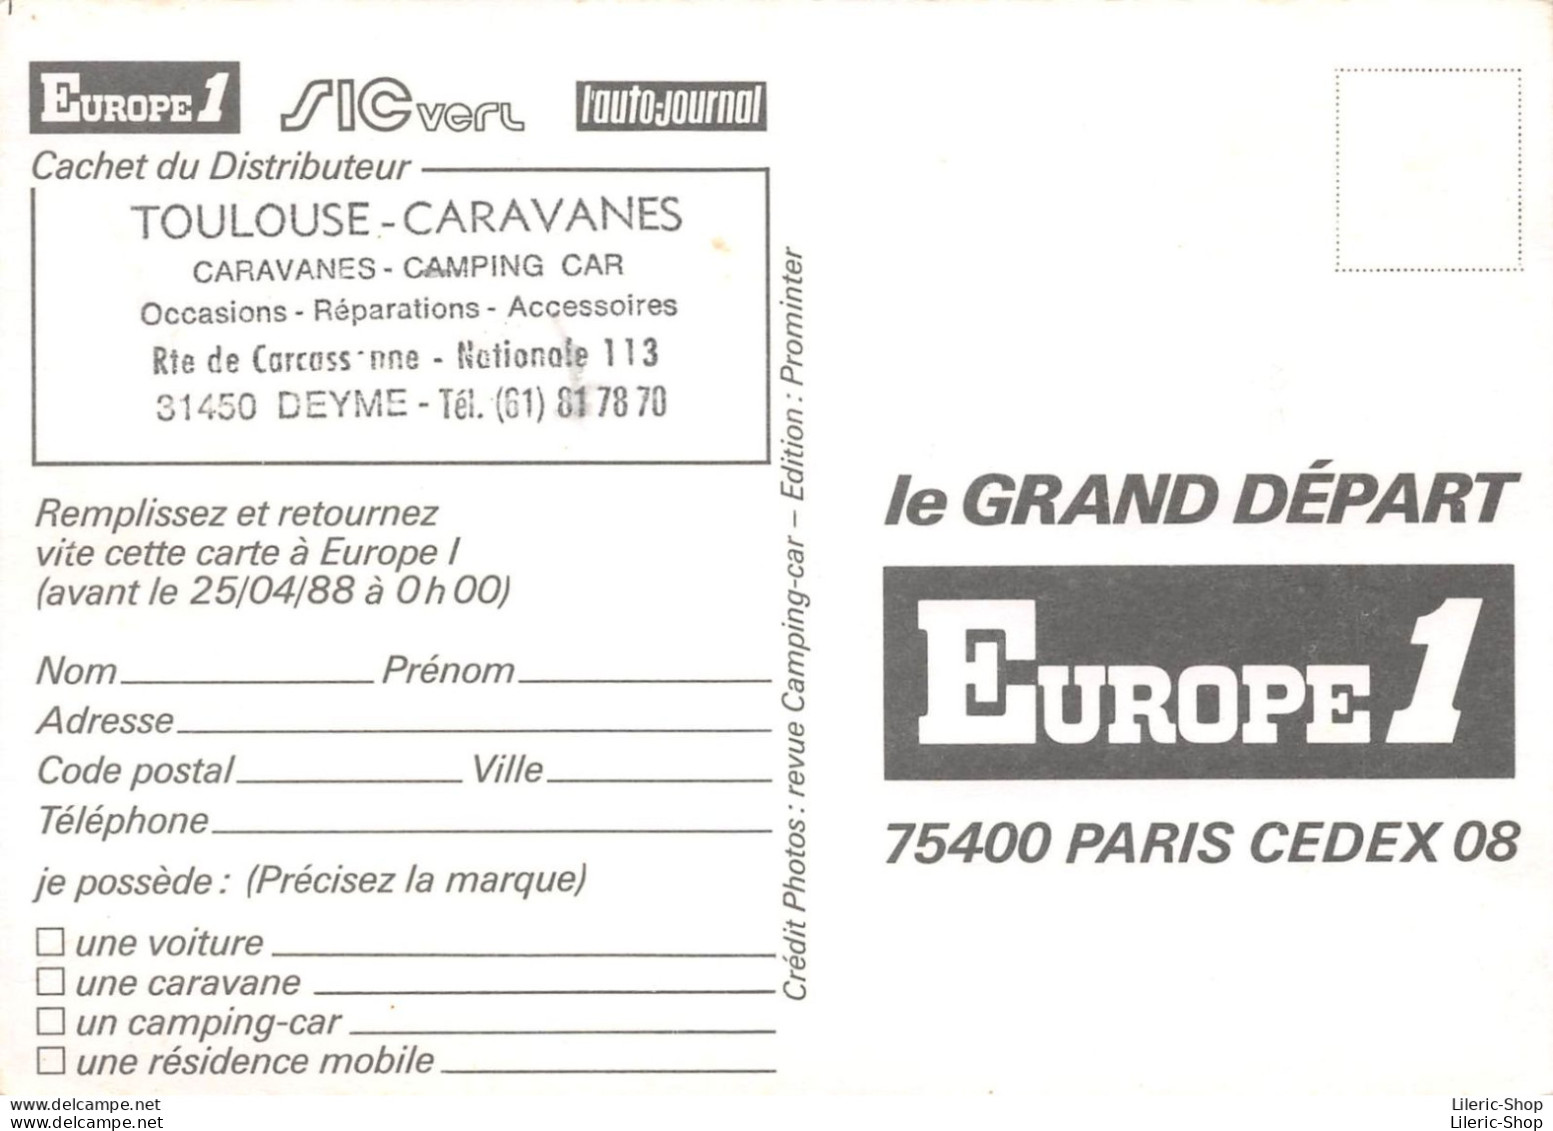 CARTE PUBLICITAIRE CARAVANE CARAVANING - Cachet Distributeur "TOULOUSE CARAVANES" - LE GRAND DEPART EUROPE 1 - Publicité